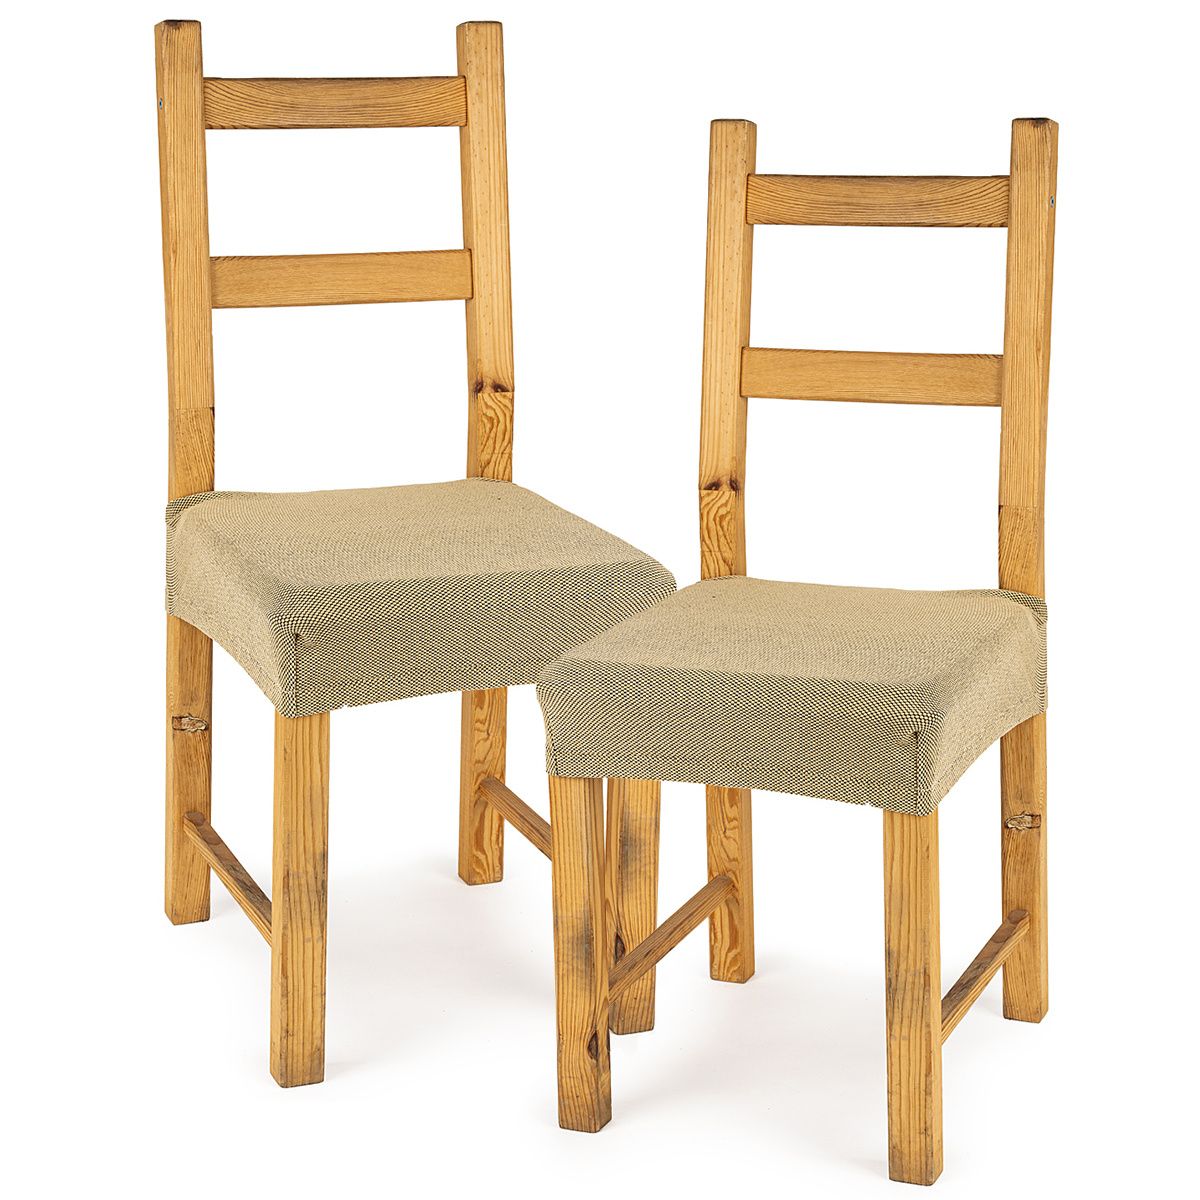 4Home Multielastický potah na sedák na židli Comfort béžová, 40 - 50 cm, sada 2 ks - 4home.cz